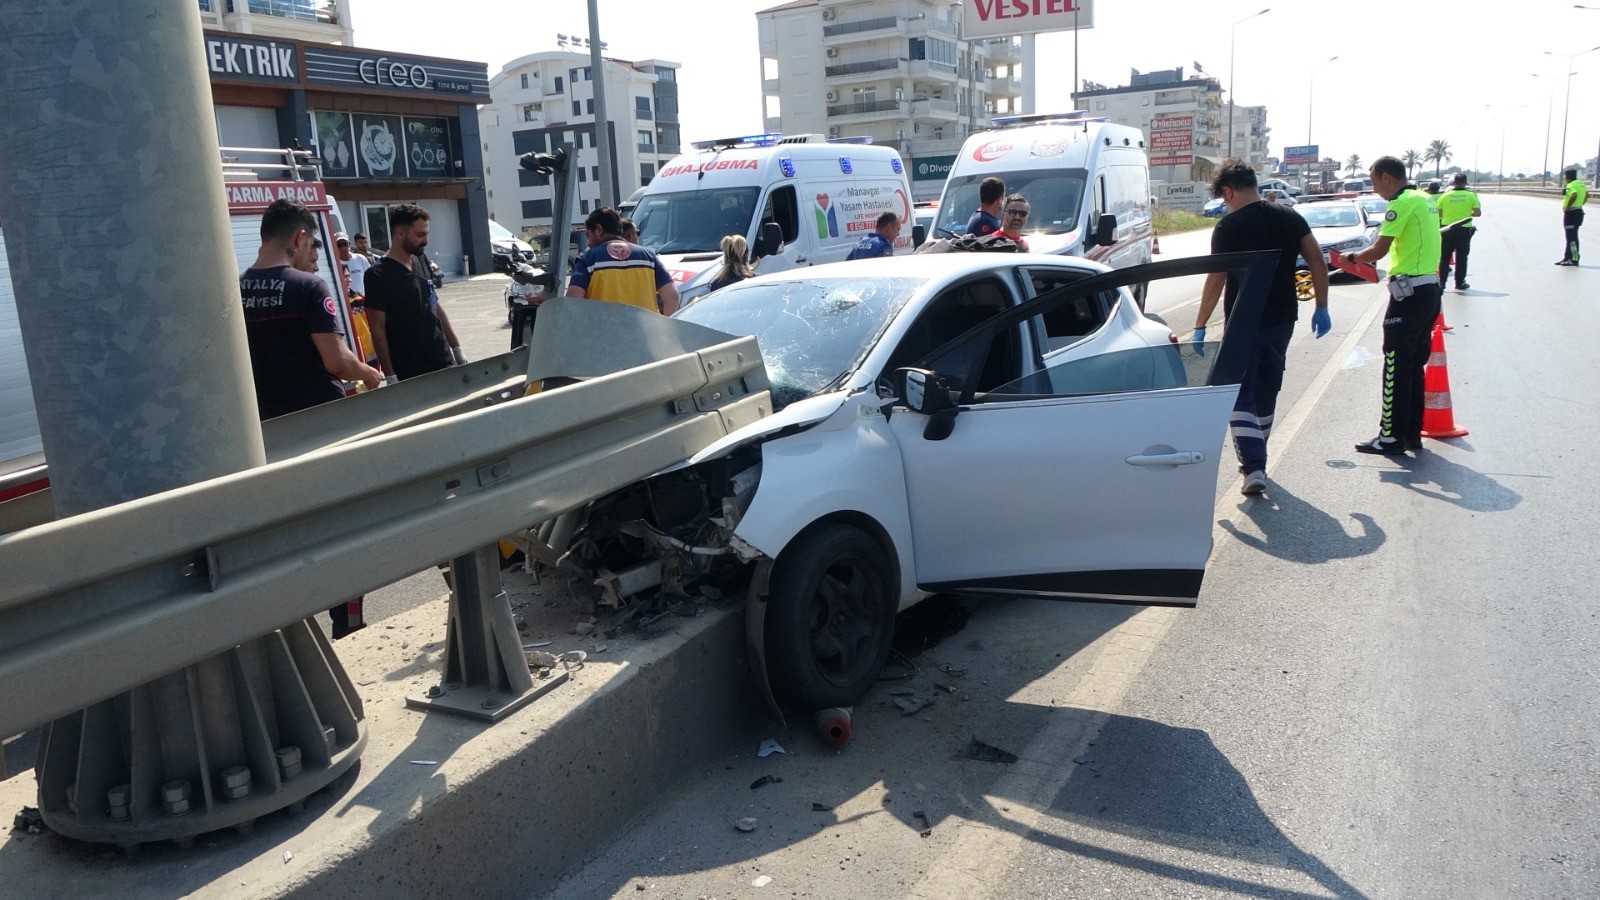 Antalya'da feci kaza